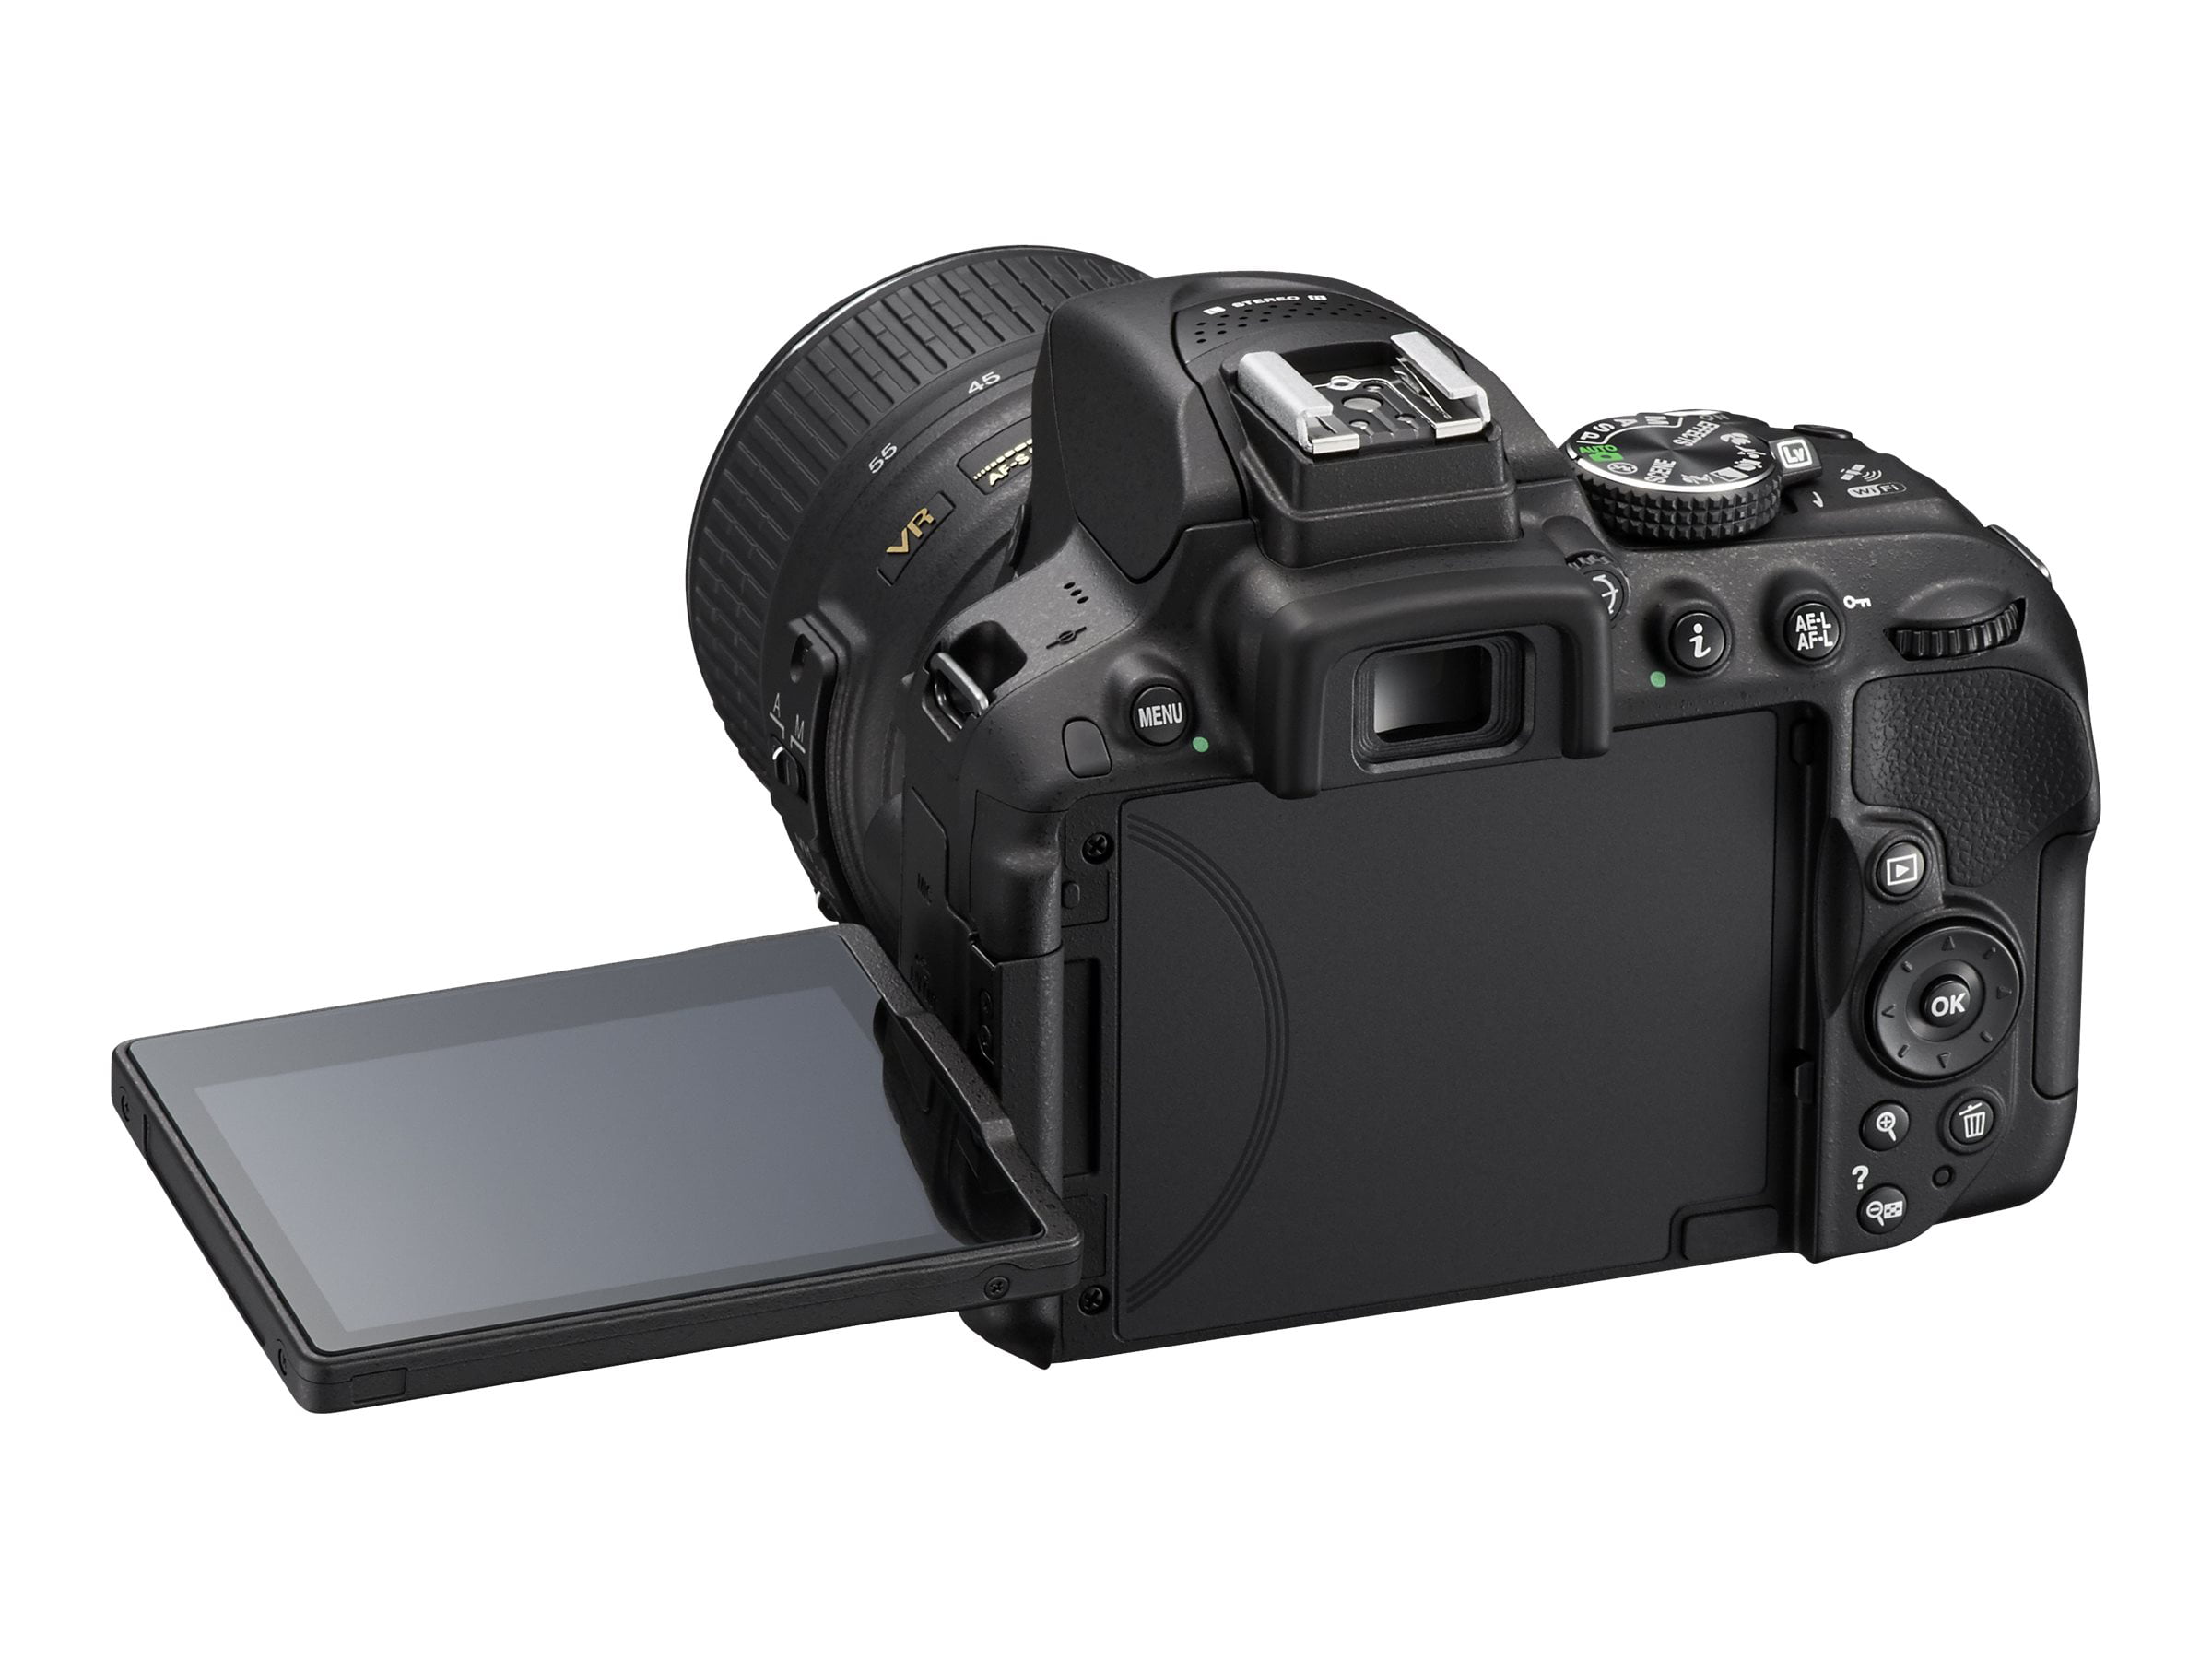 Nikon Black D5300 DSLR Camera Kit with 24.2 Megapixels and 18 